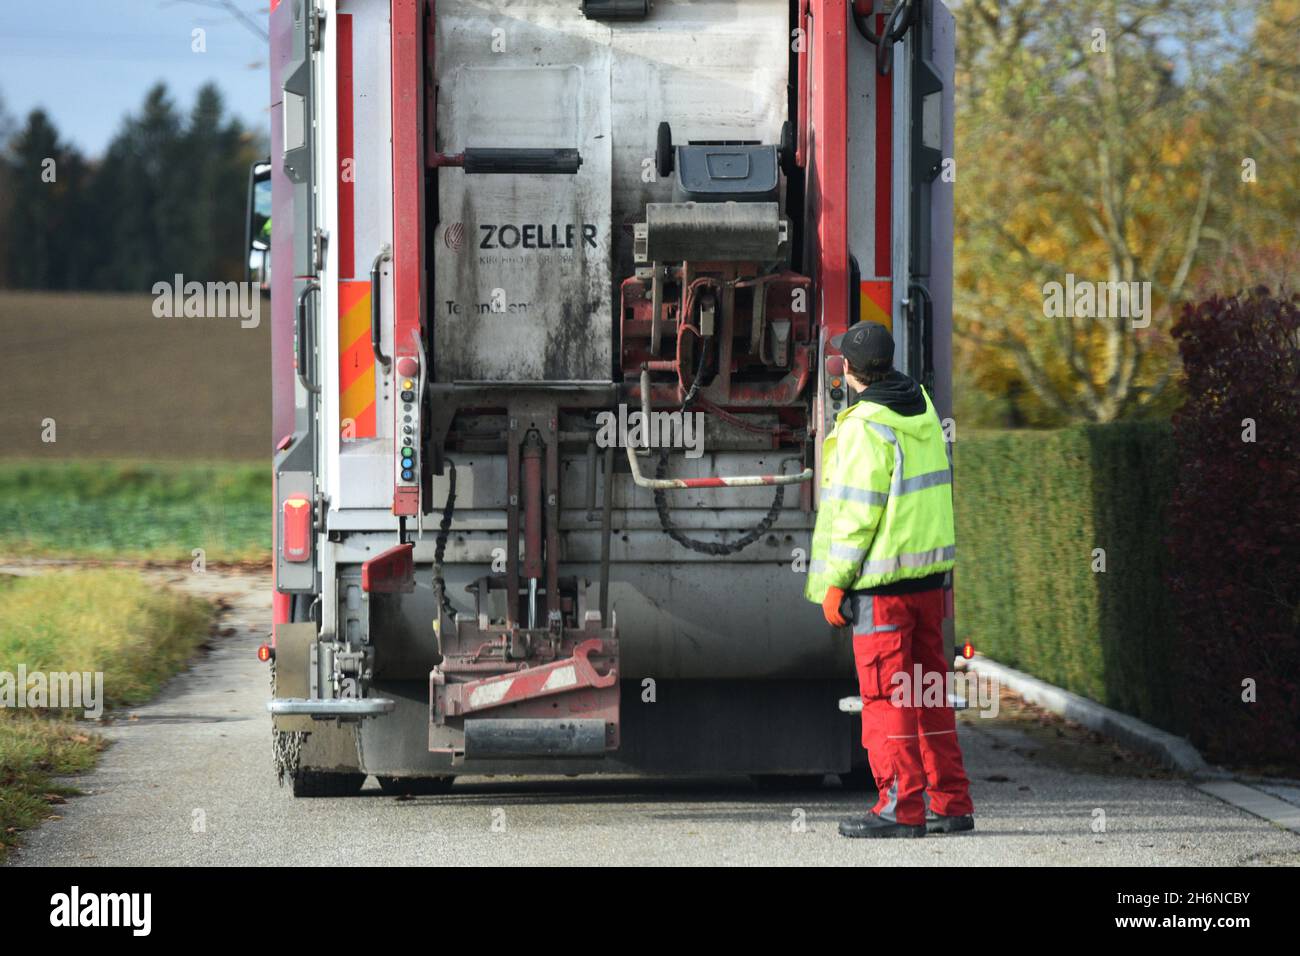 Müllauto von hinten in Oberösterreich, Österreich, Europa - Garbage truck from behind in Upper Austria, Austria, Europe Stock Photo